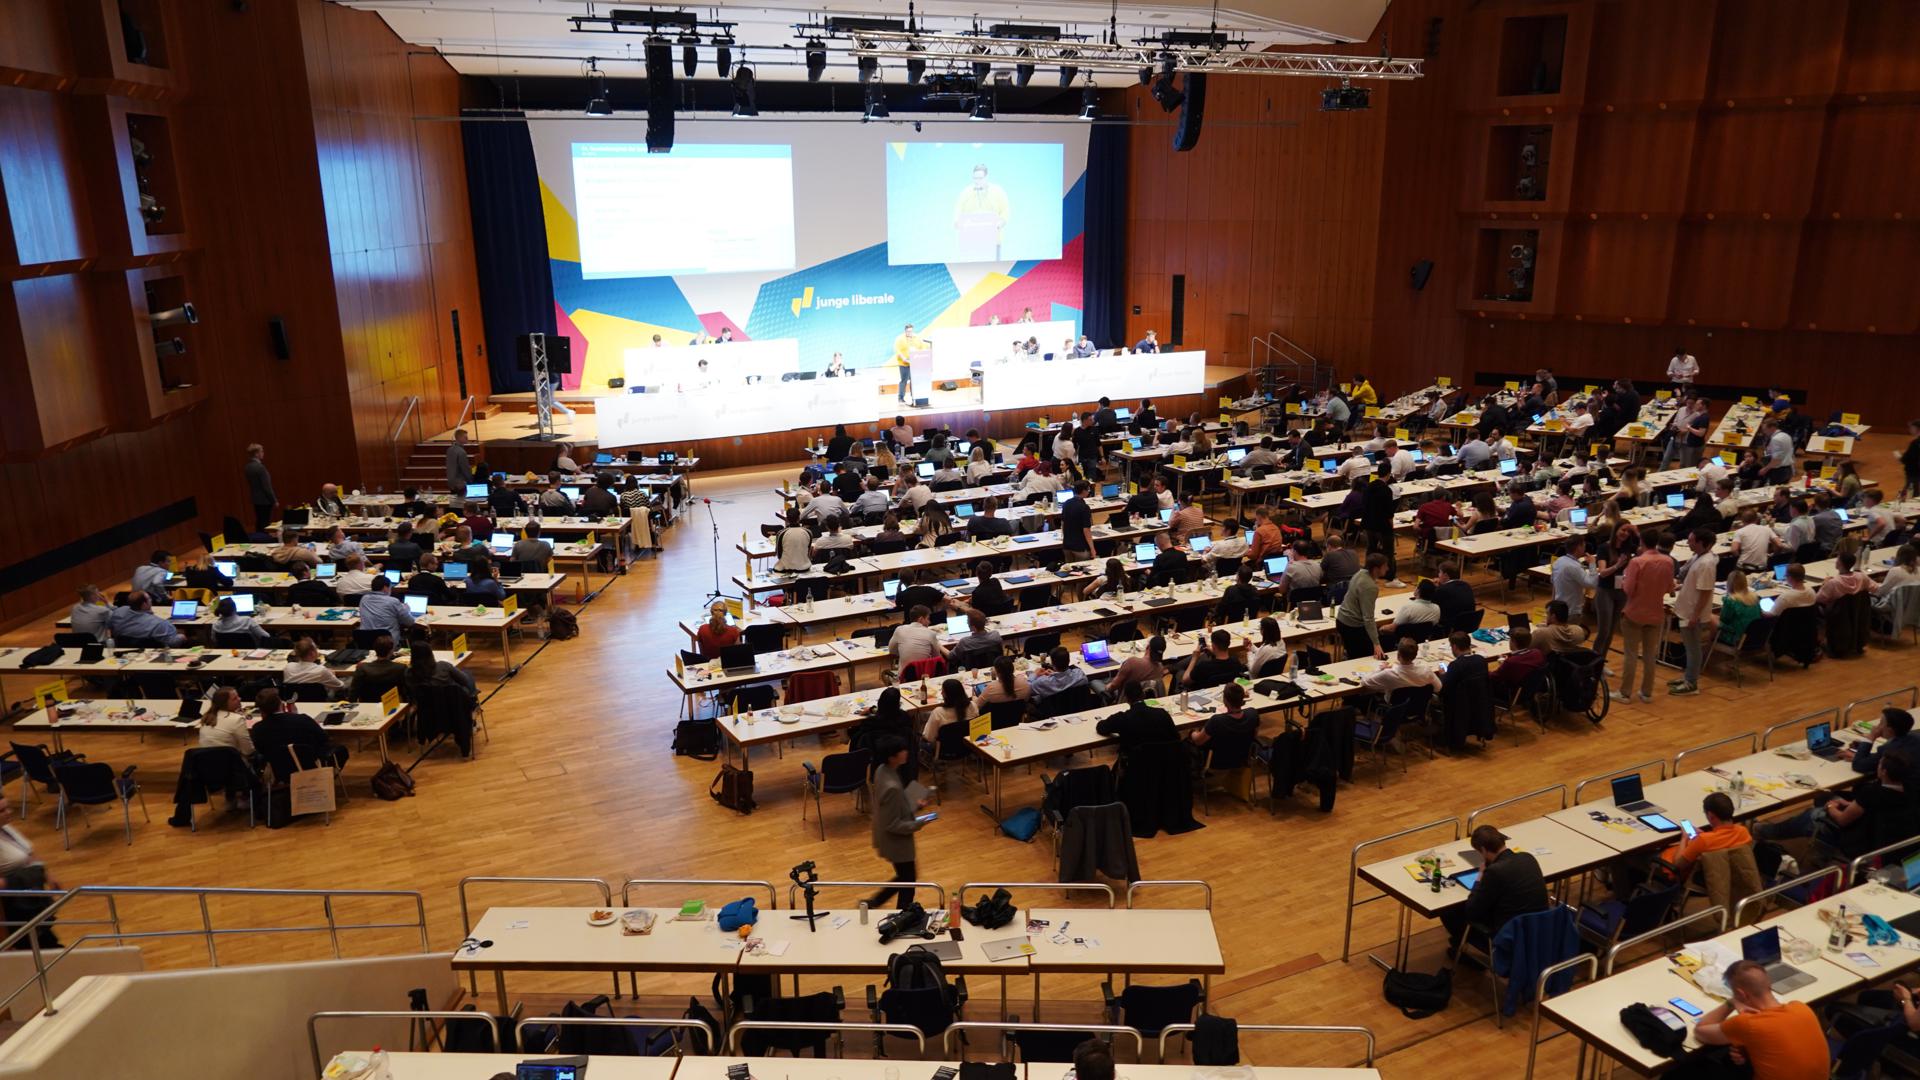 Volles Haus: Im großen Saal des Pforzheimer Congress Centrums saßen am Wochenende beim JuLi-Bundeskongress Gäste und Delegierte, um zu debattieren und abzustimmen.